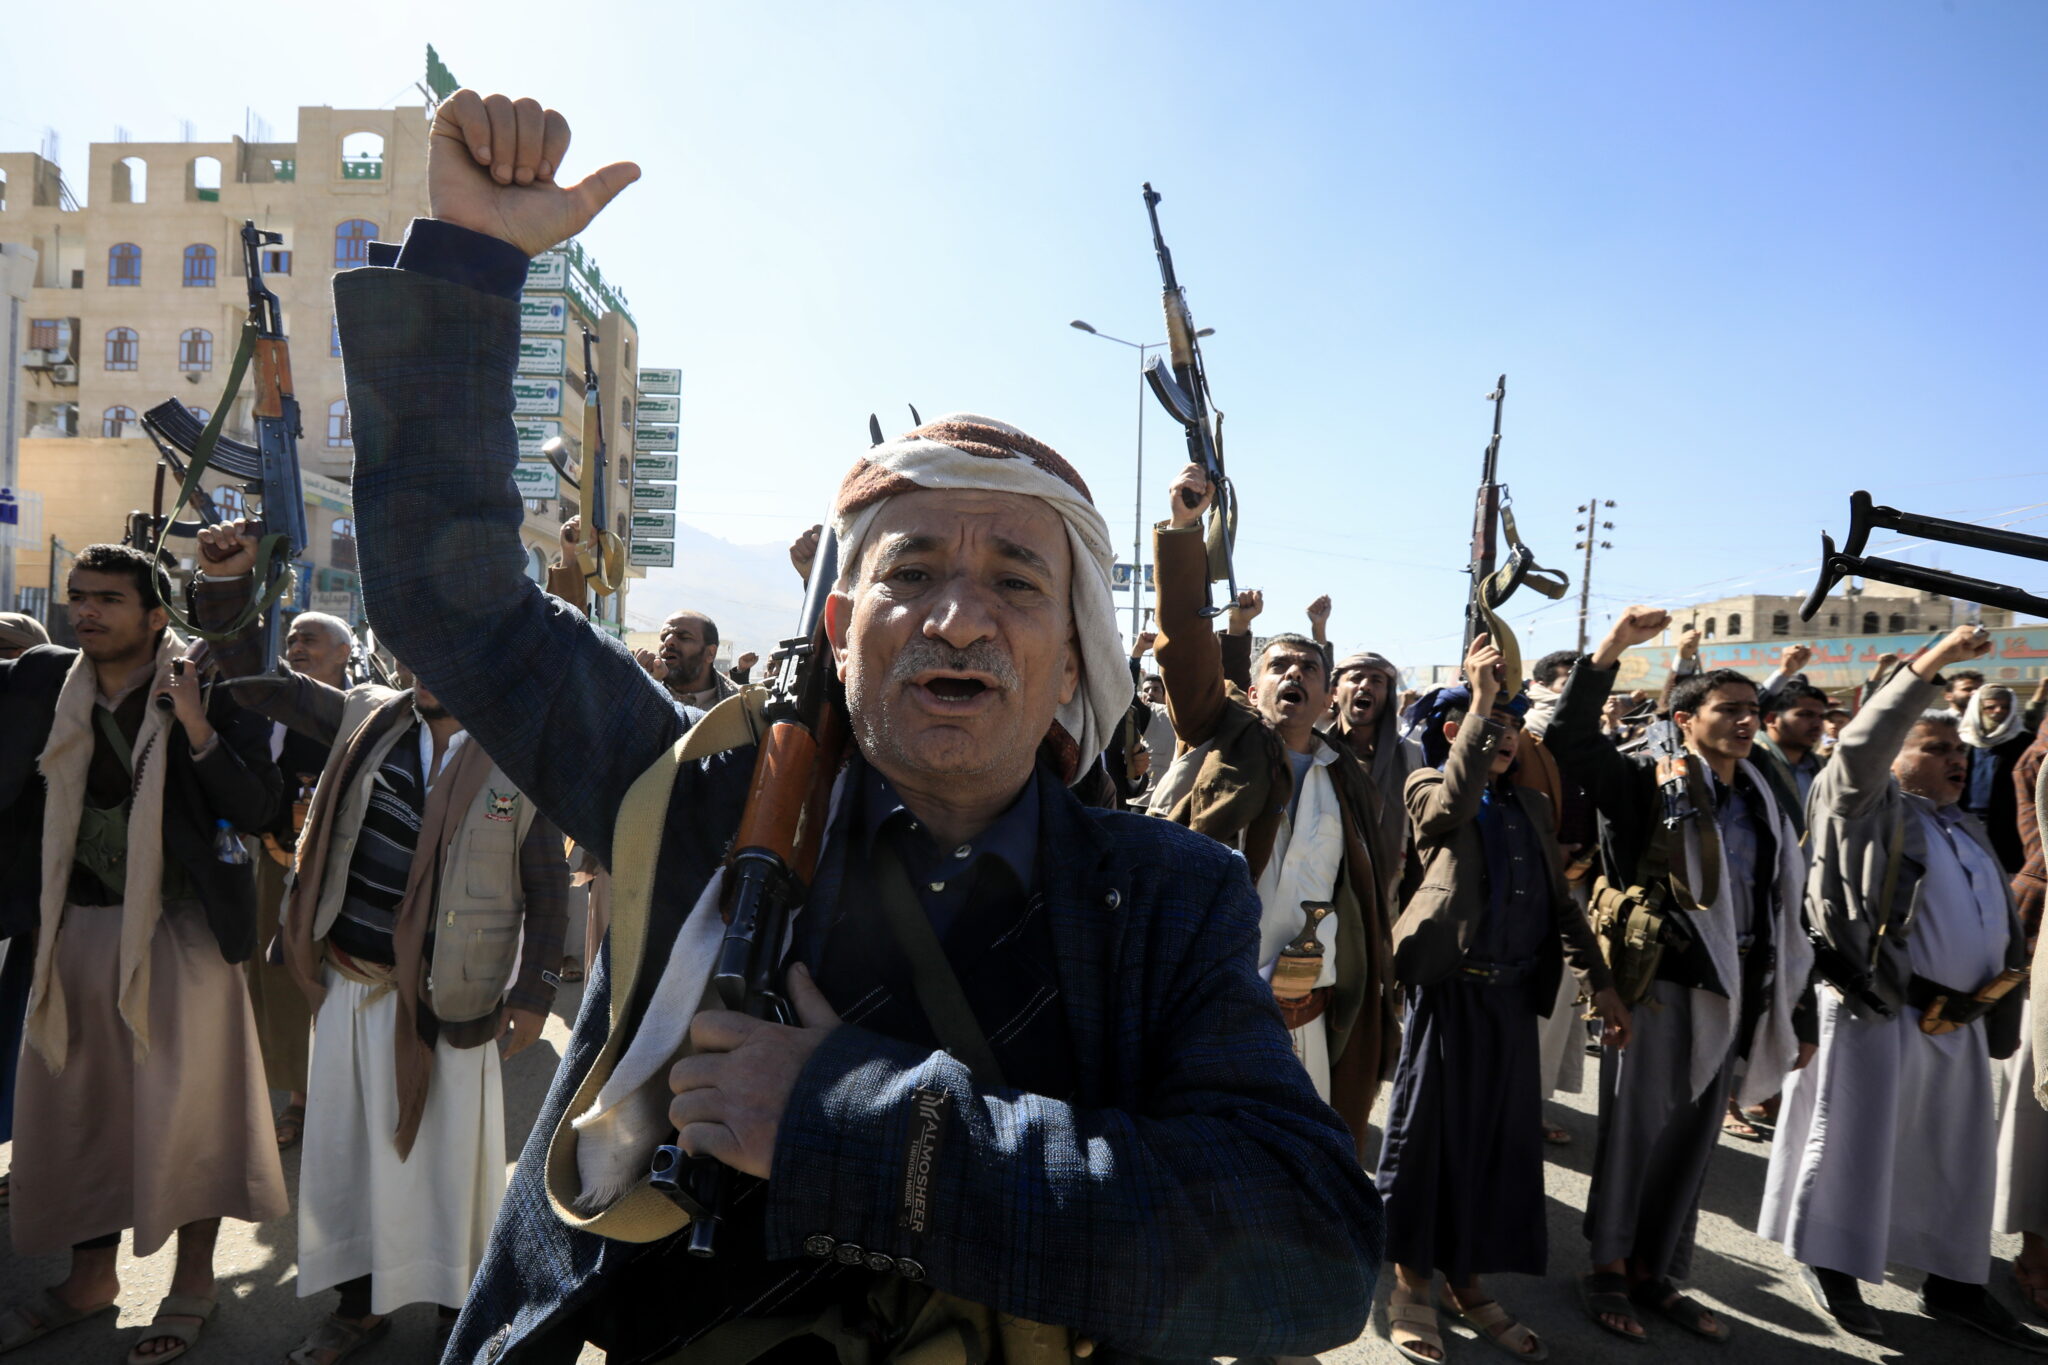 Недавно завербованные члены народной армии хуситов выкрикивают лозунги и размахивают оружием во время собрания по окончании военных учений в Сане, Йемен, 11 января 2024 года. Фото YAHYA ARHAB / EPA / Scan[ix / LETA.